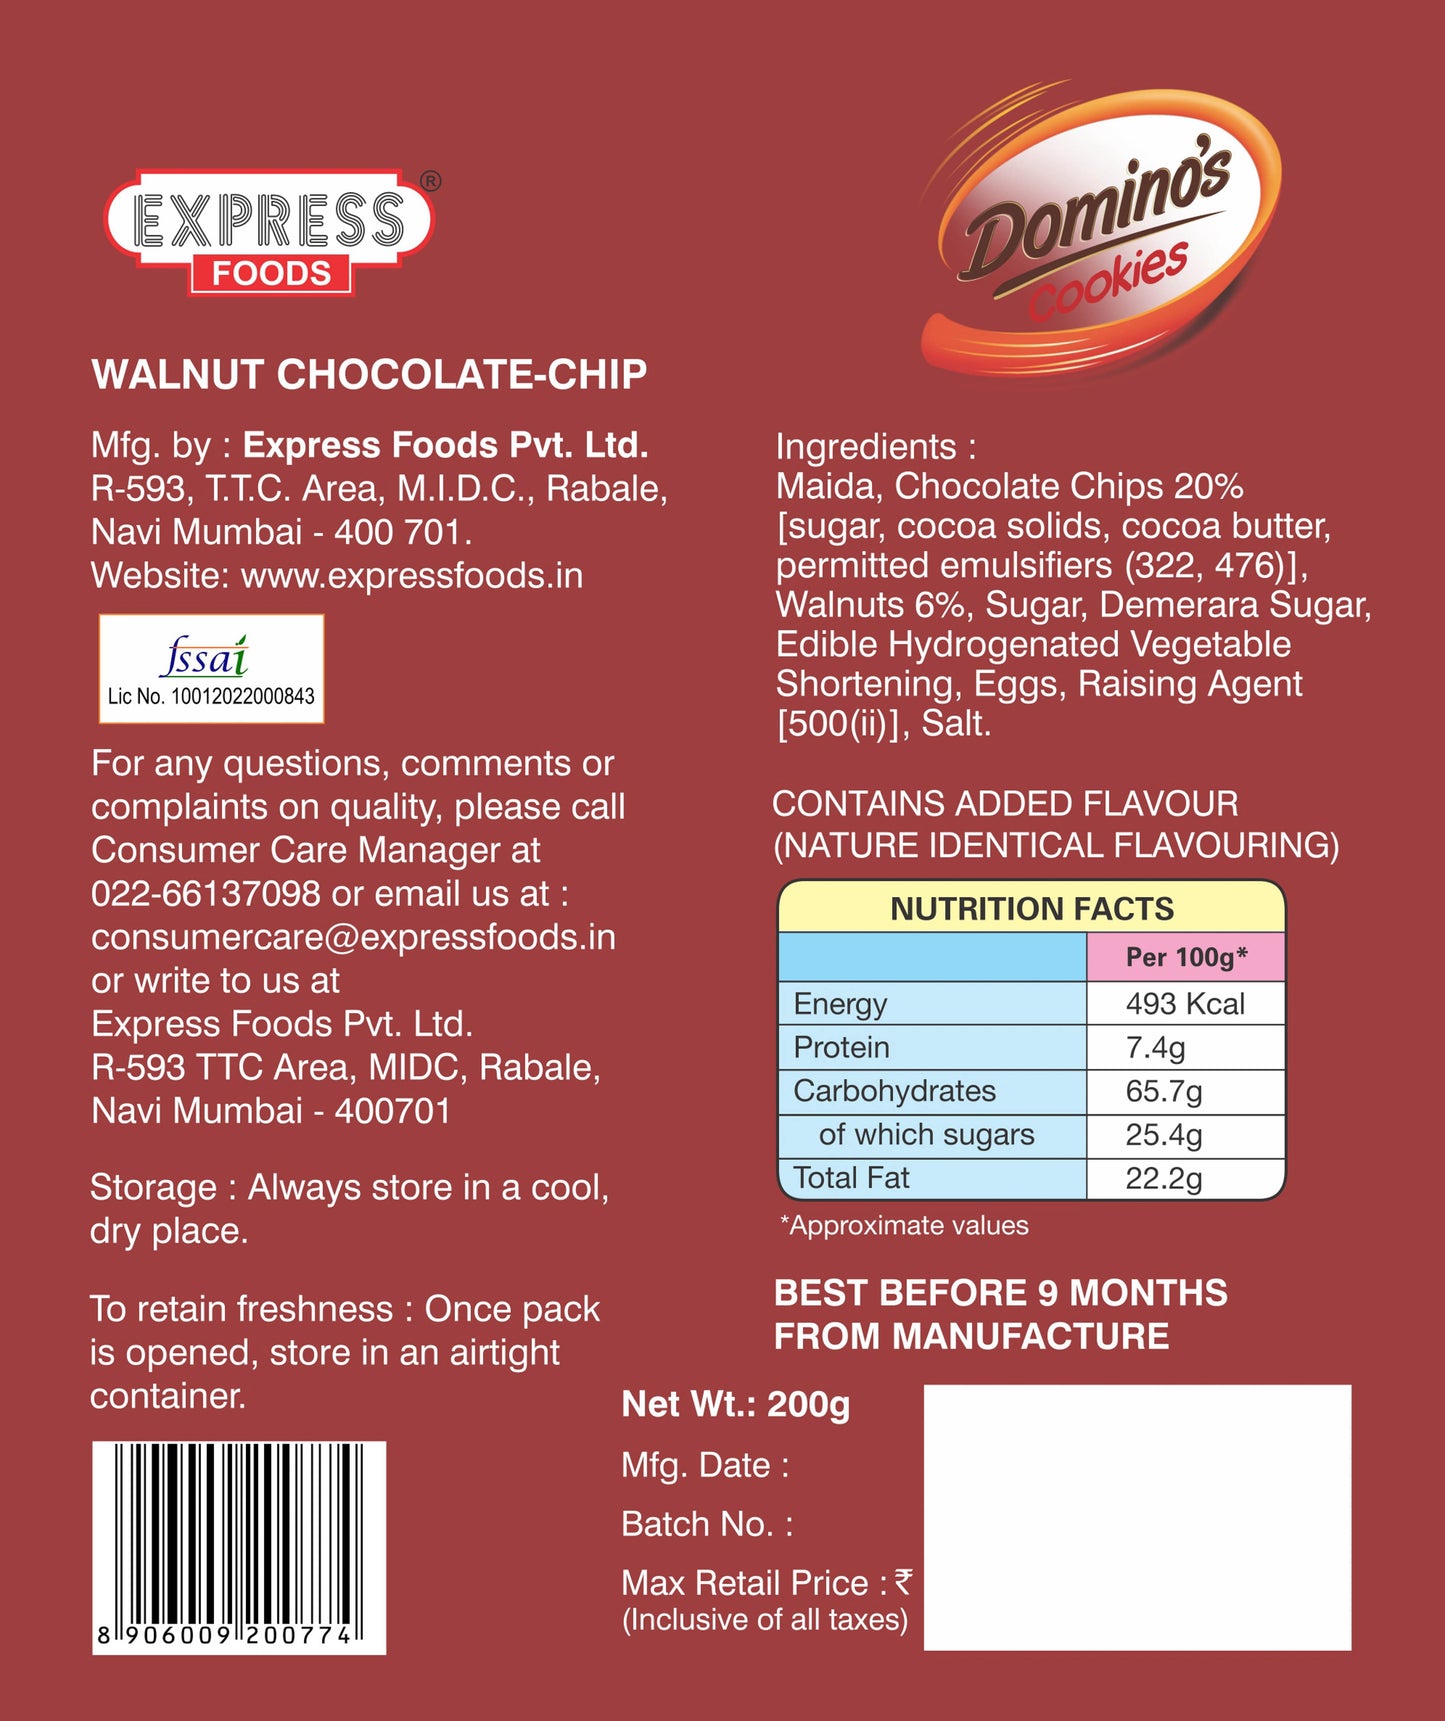 Domino's Walnut Chocolate Chip Cookies